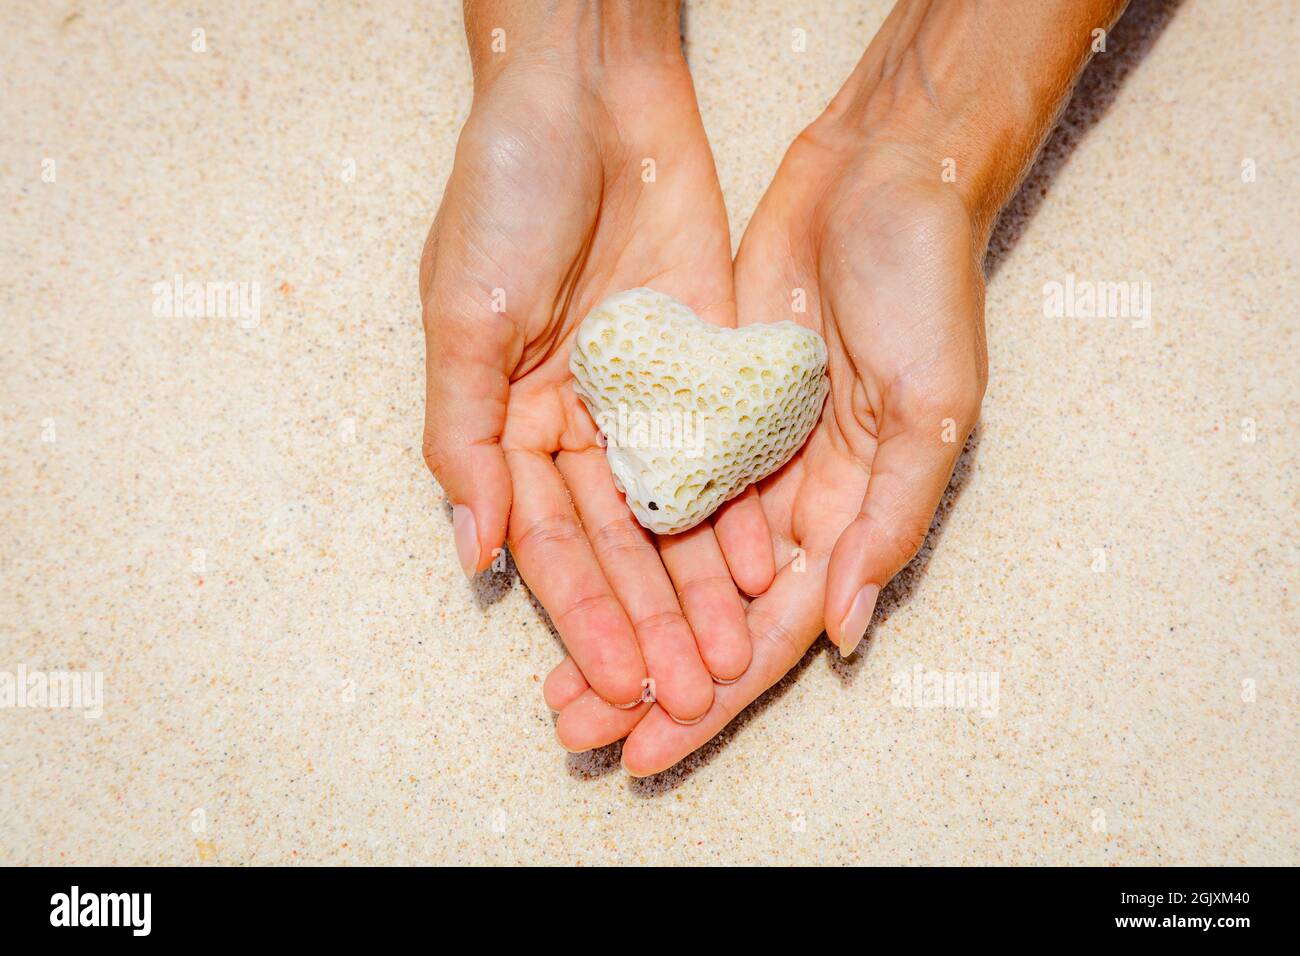 Corail en forme de coeur dans le sable au bord de l'arrière-plan. L'île de Boracay, Philippines. Concept d'aires marines de conservation et la protection des océans. Avec l'espace. Banque D'Images